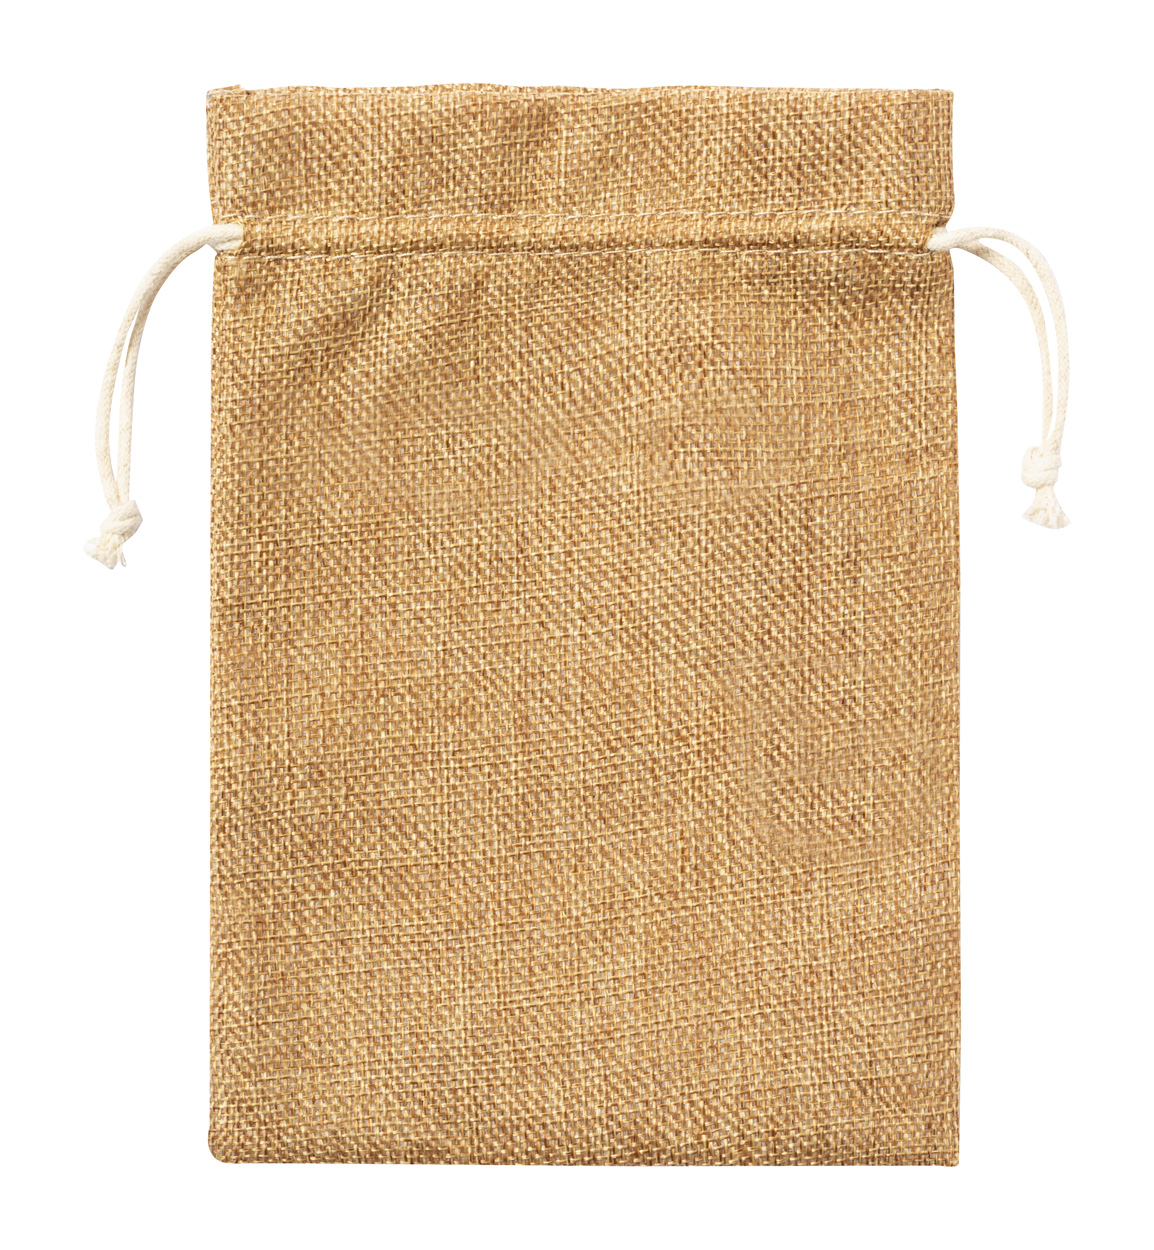 Pidrum grocery bag - brown